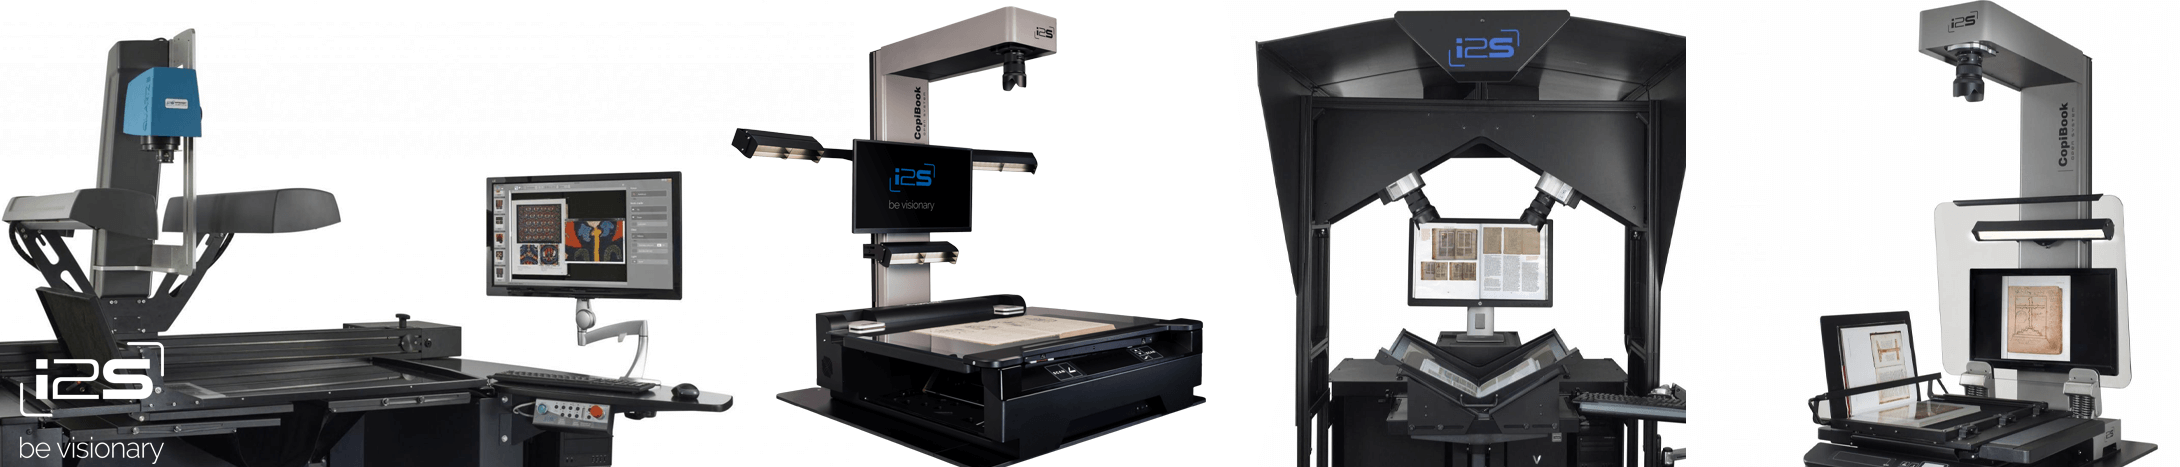 Knižní a velkoformátové skenery i2S od společnosti EXON